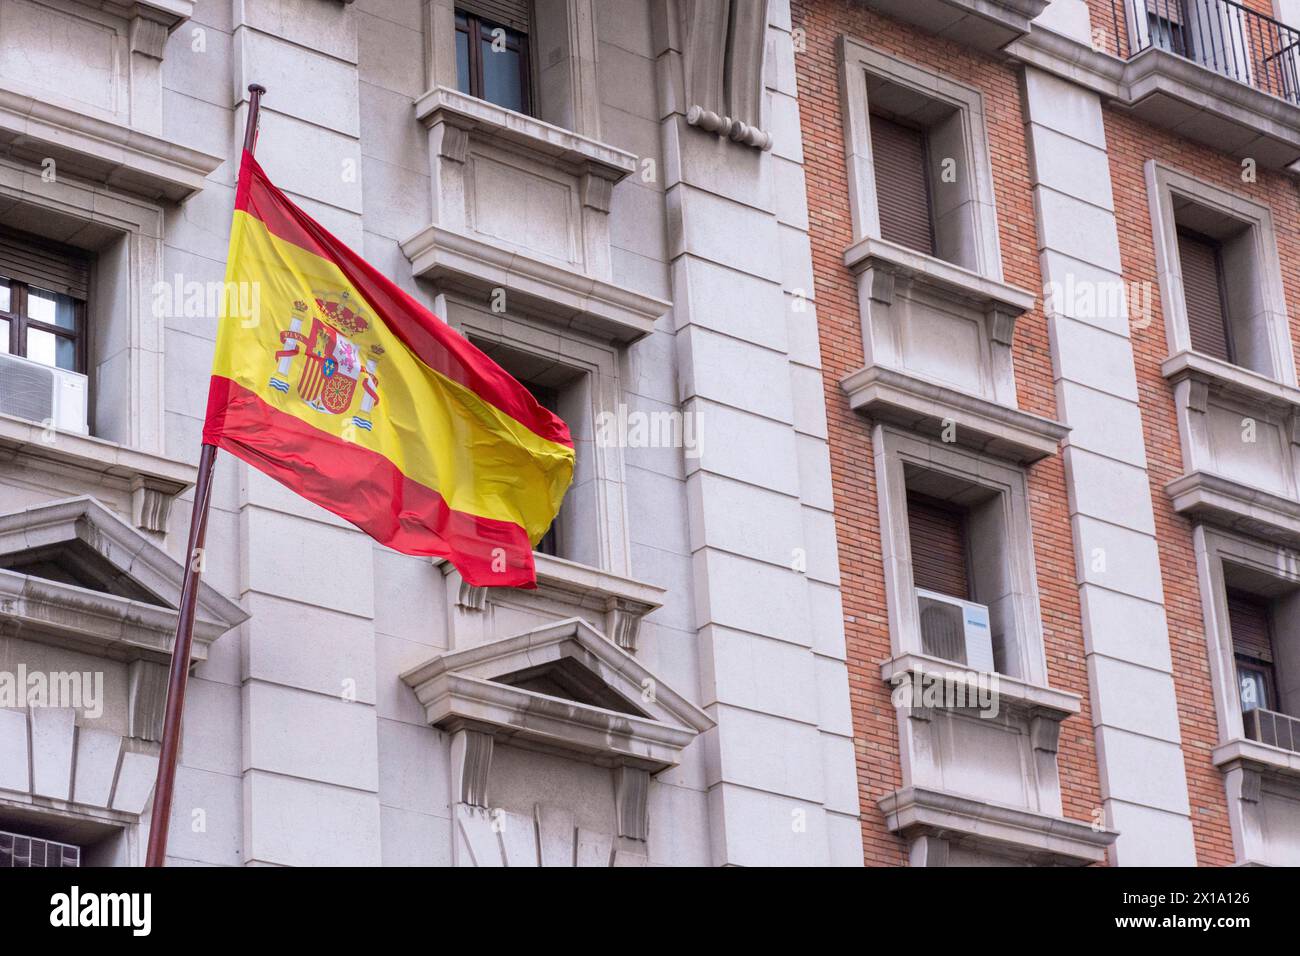 Drapeau espagnol. Bandera de España. Banque D'Images